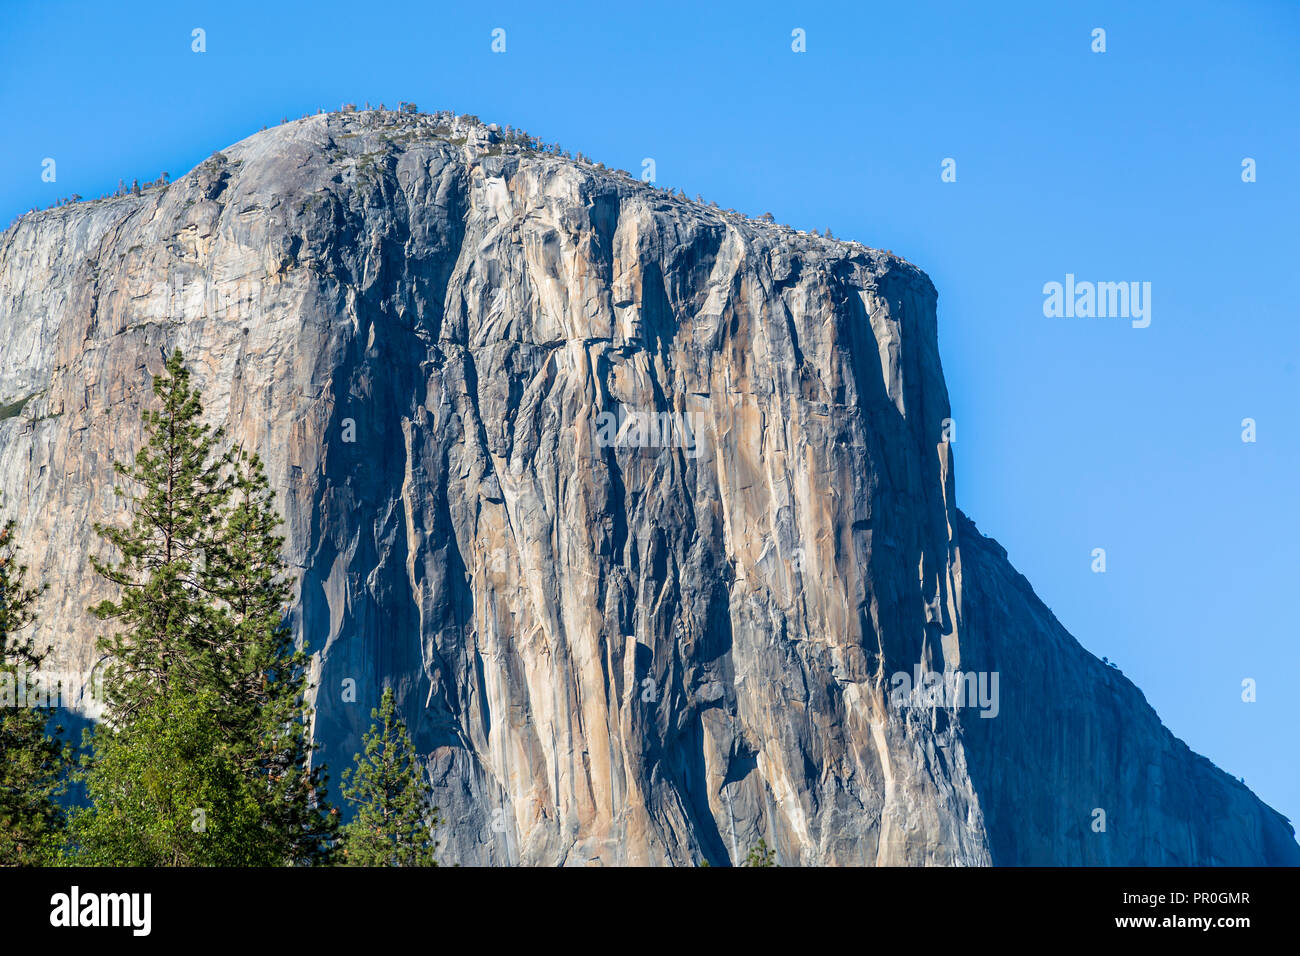 El Capitan im Yosemite Valley, Weltkulturerbe der UNESCO, Kalifornien, Vereinigte Staaten von Amerika, Nordamerika Stockfoto